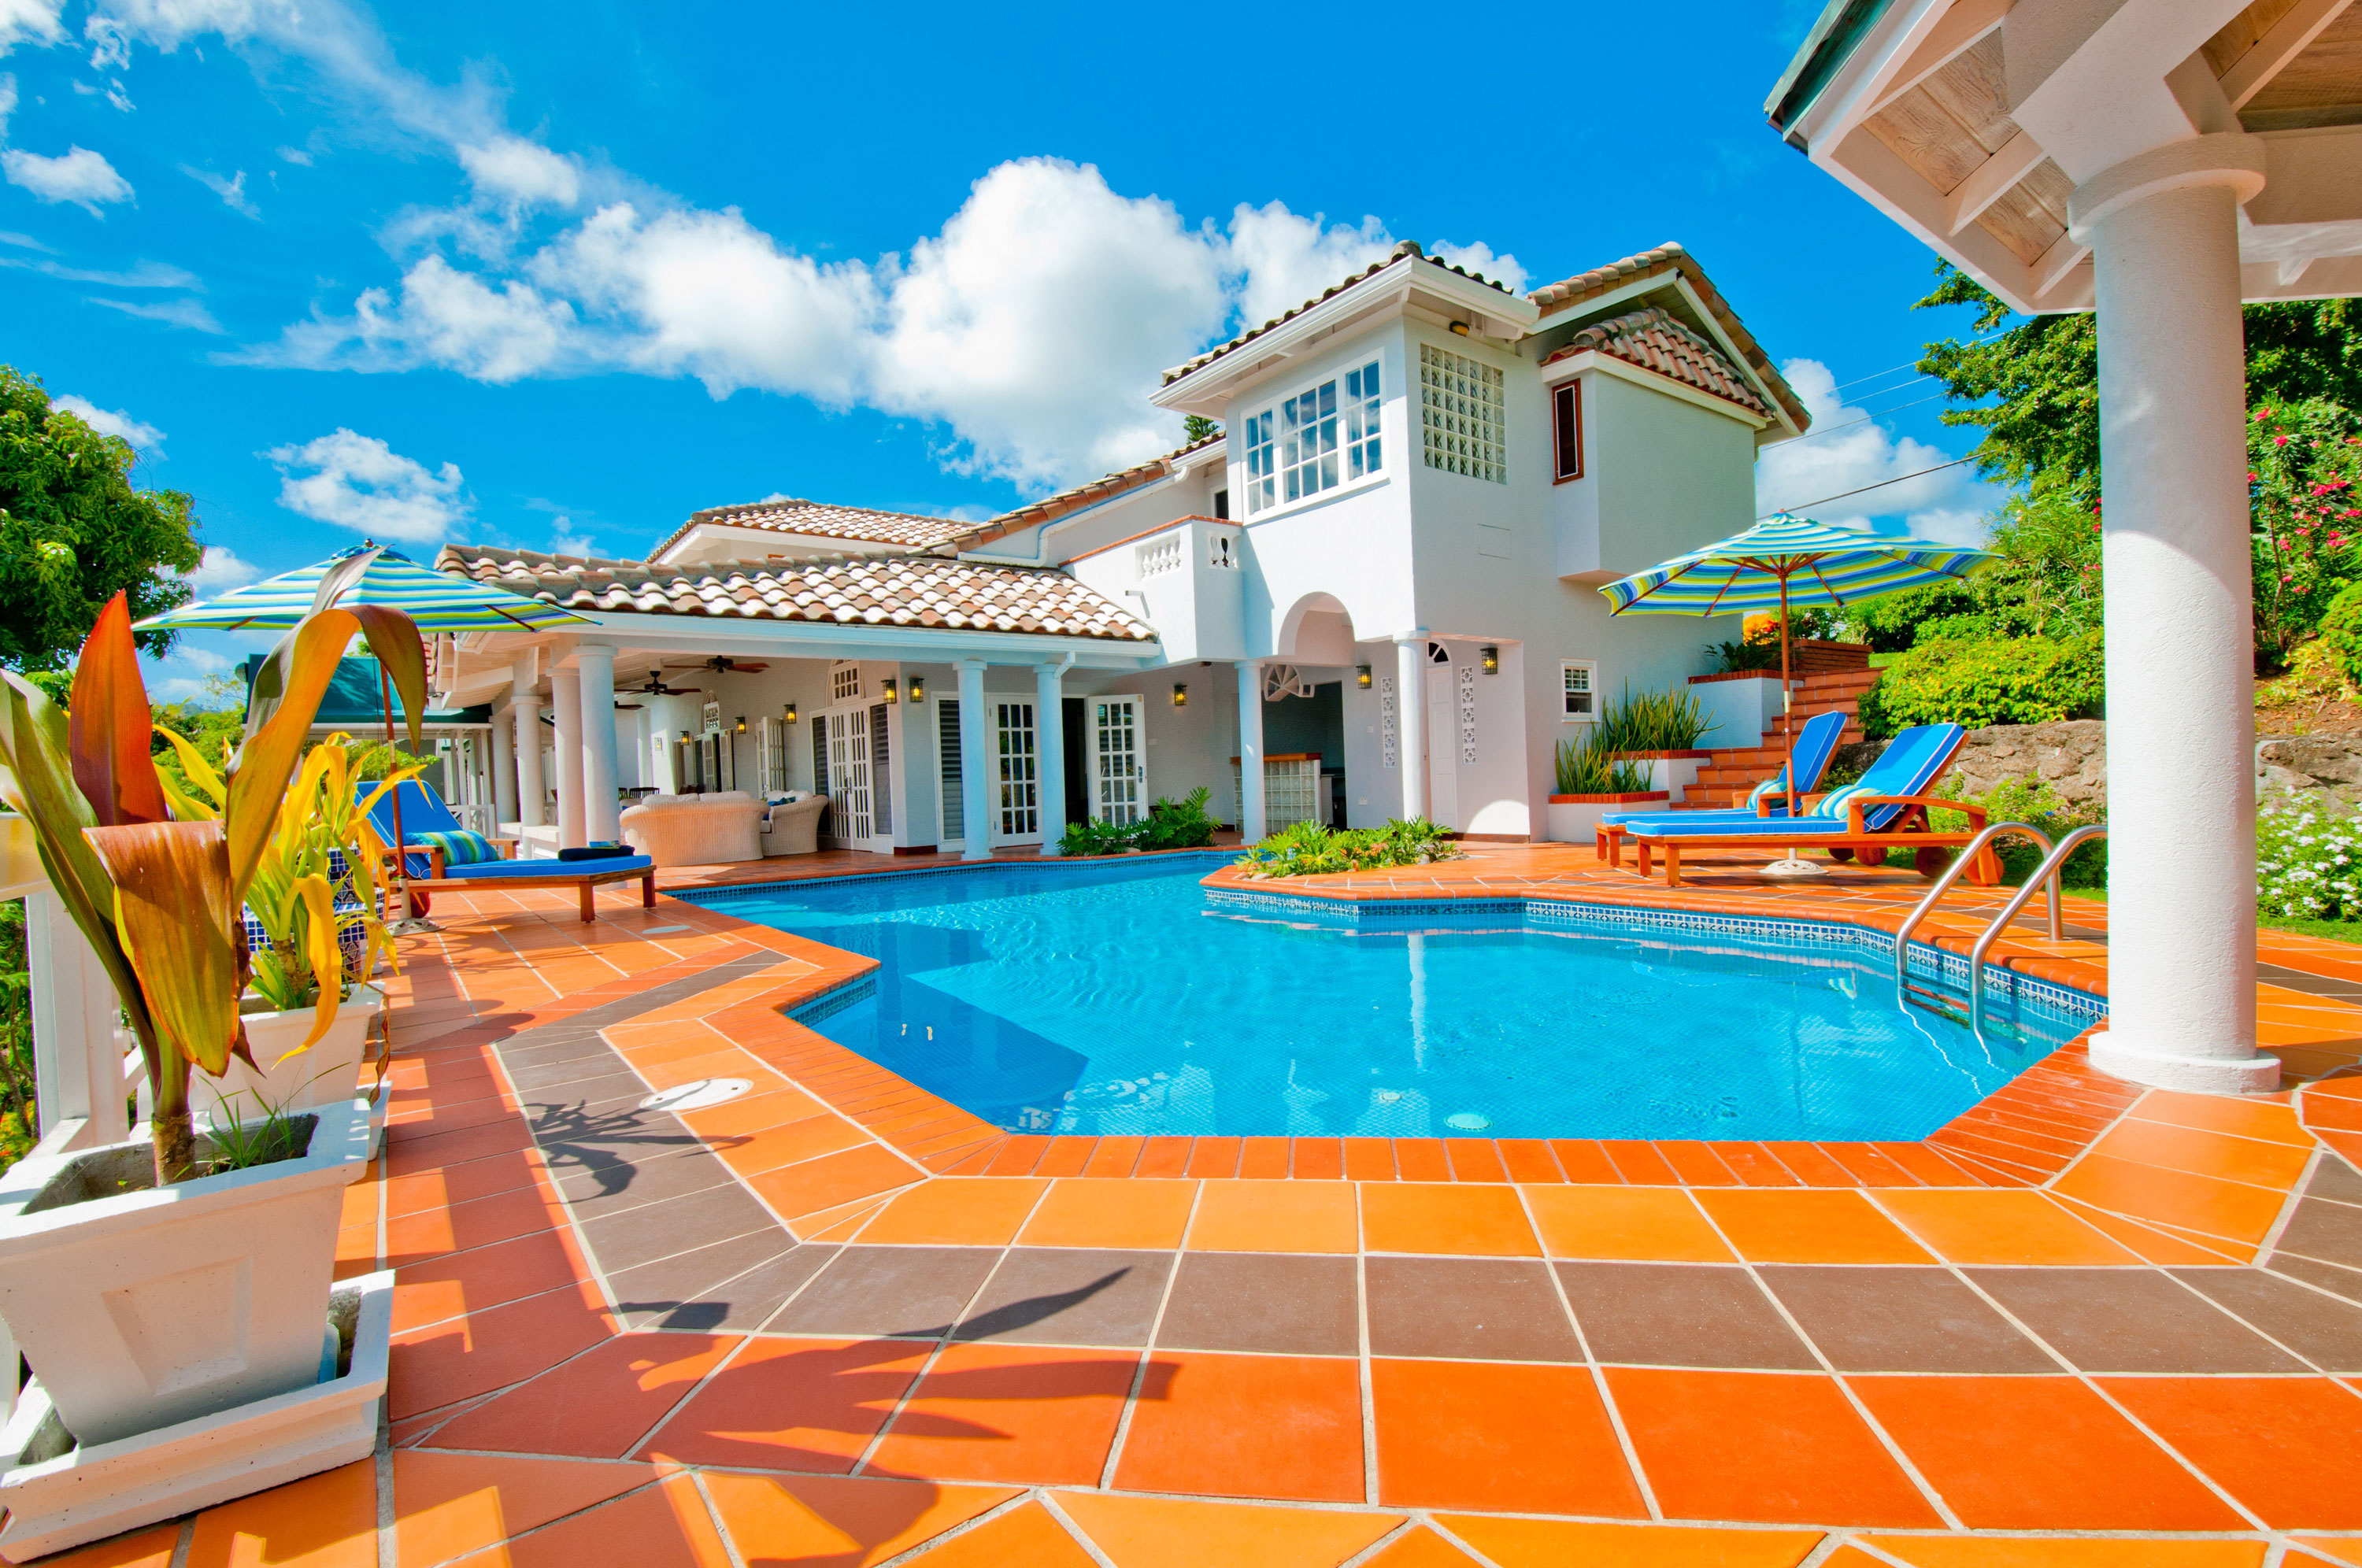 piscina wallpaper,property,swimming pool,building,real estate,resort